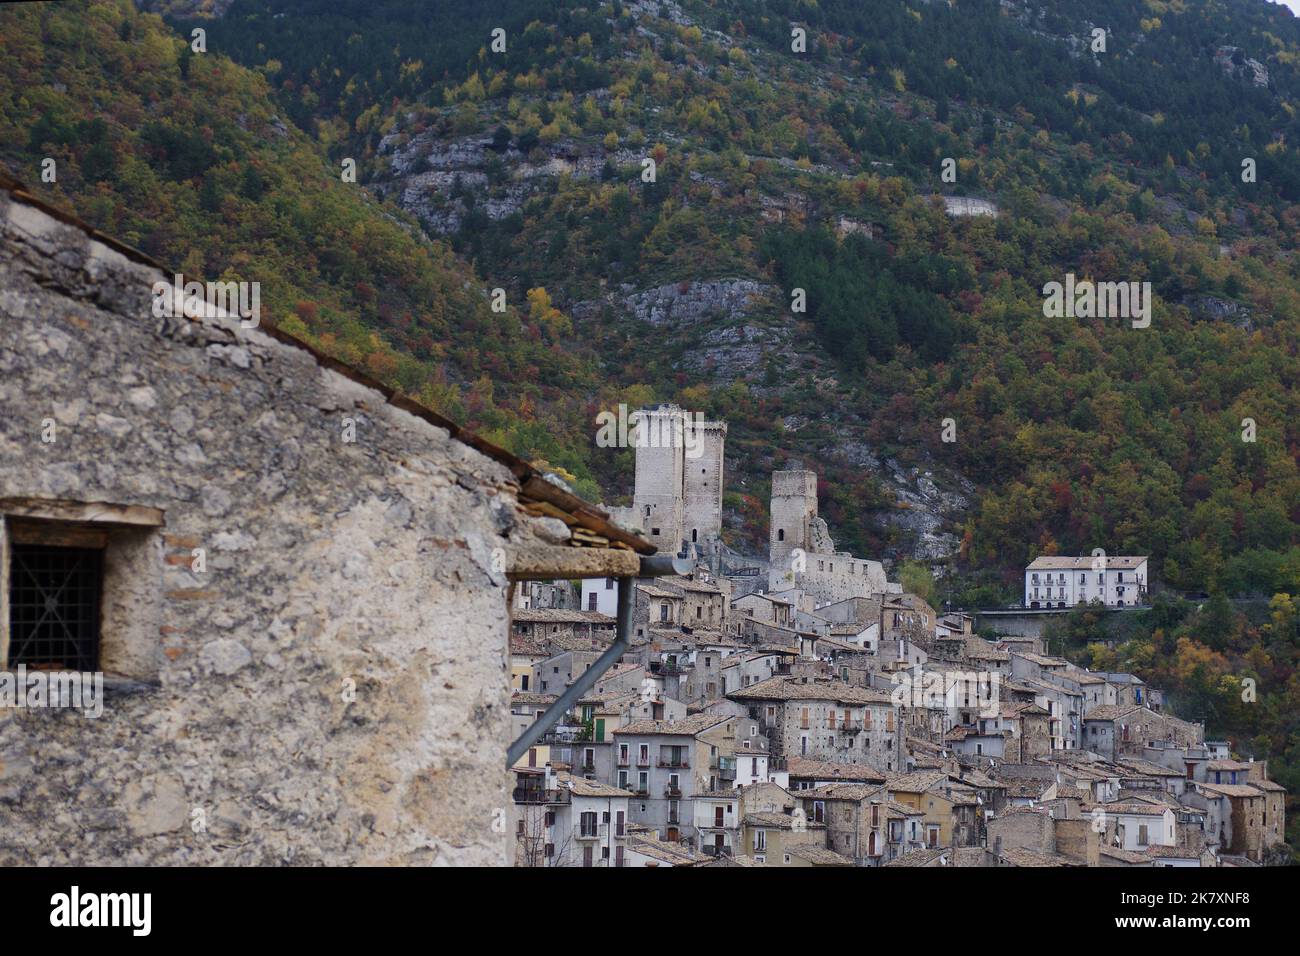 Aperçu de Pacentro (AQ) - un des plus beaux villages d'Italie: Le pays des grands-parents de la star pop Madonna - Abruzzo - Italie Banque D'Images